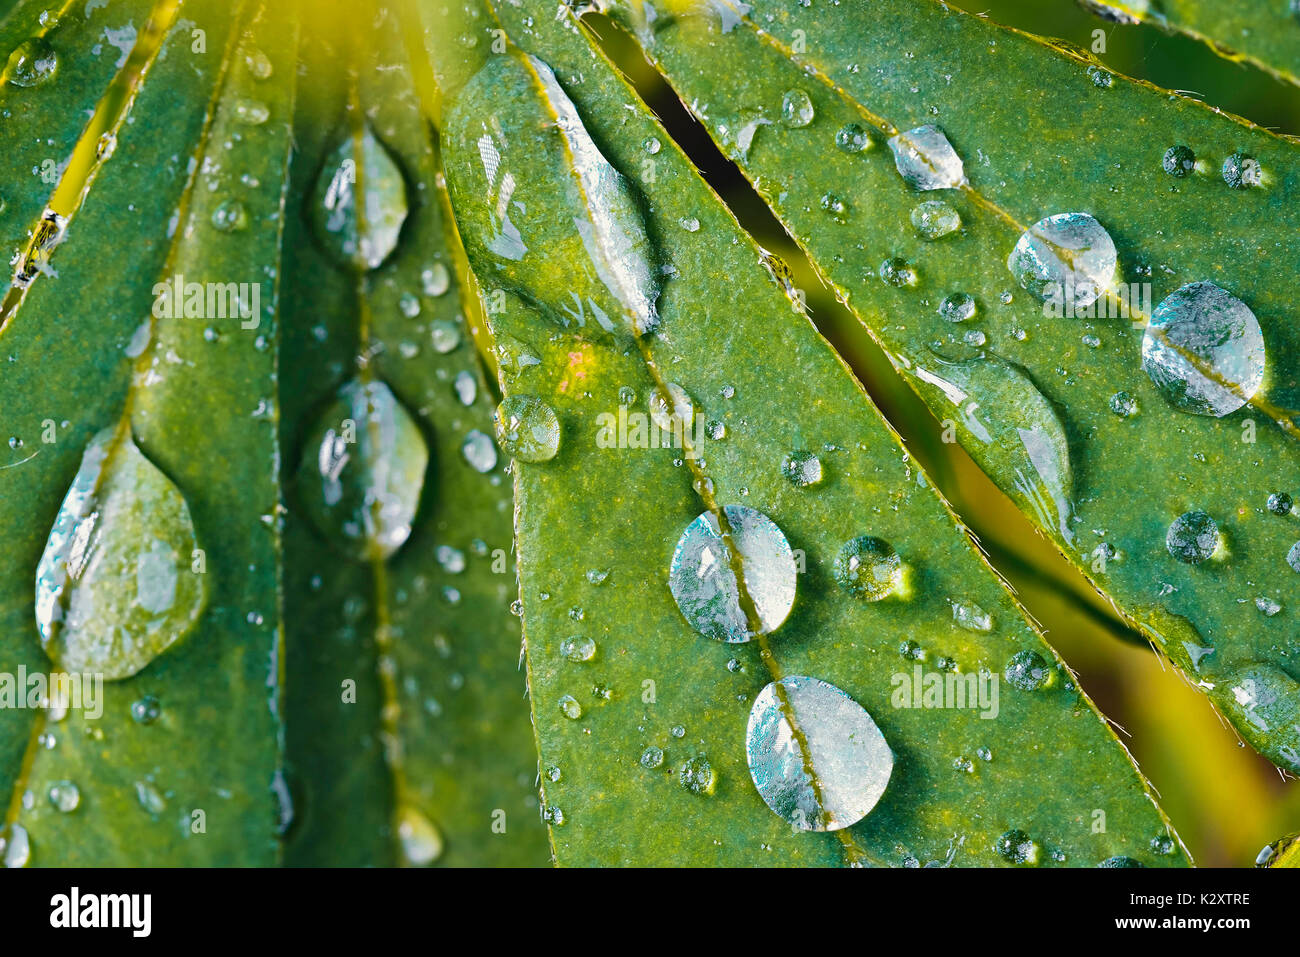 Las gotas de lluvia en una hoja, altramuz Regentropfen auf einem Lupinen-Blatt Foto de stock